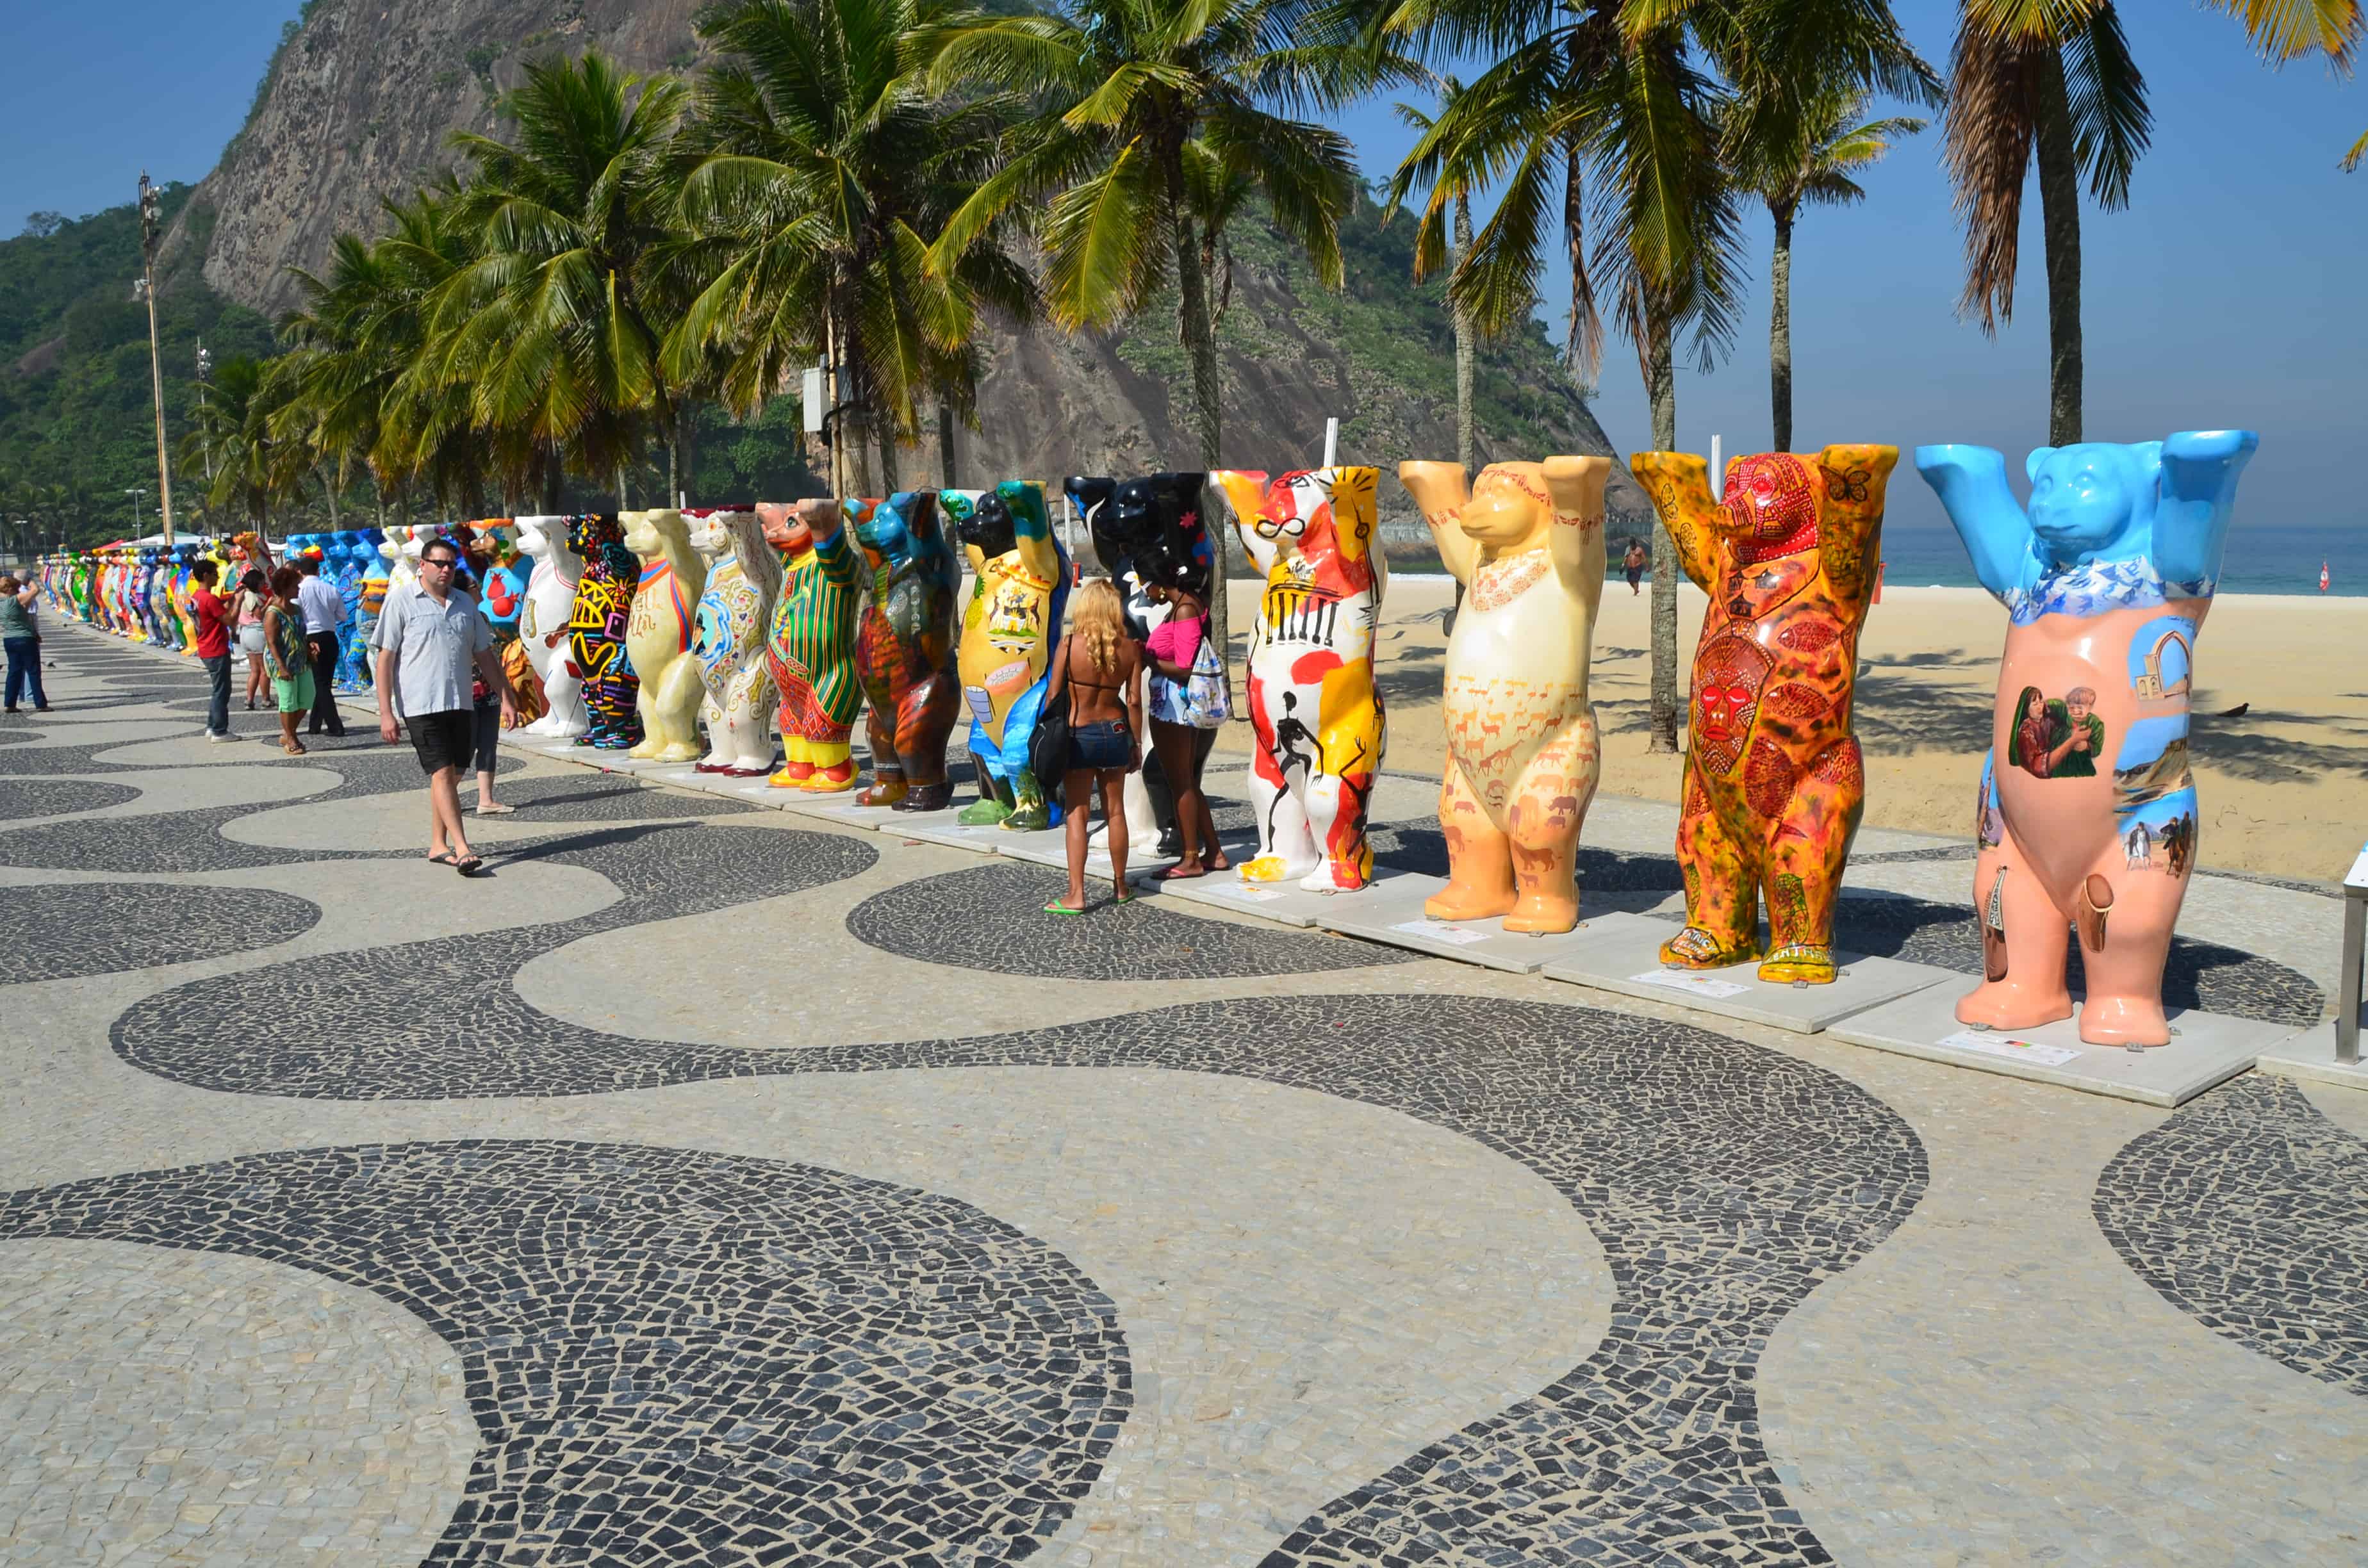 United Buddy Bears in Leme in Rio de Janeiro, Brazil